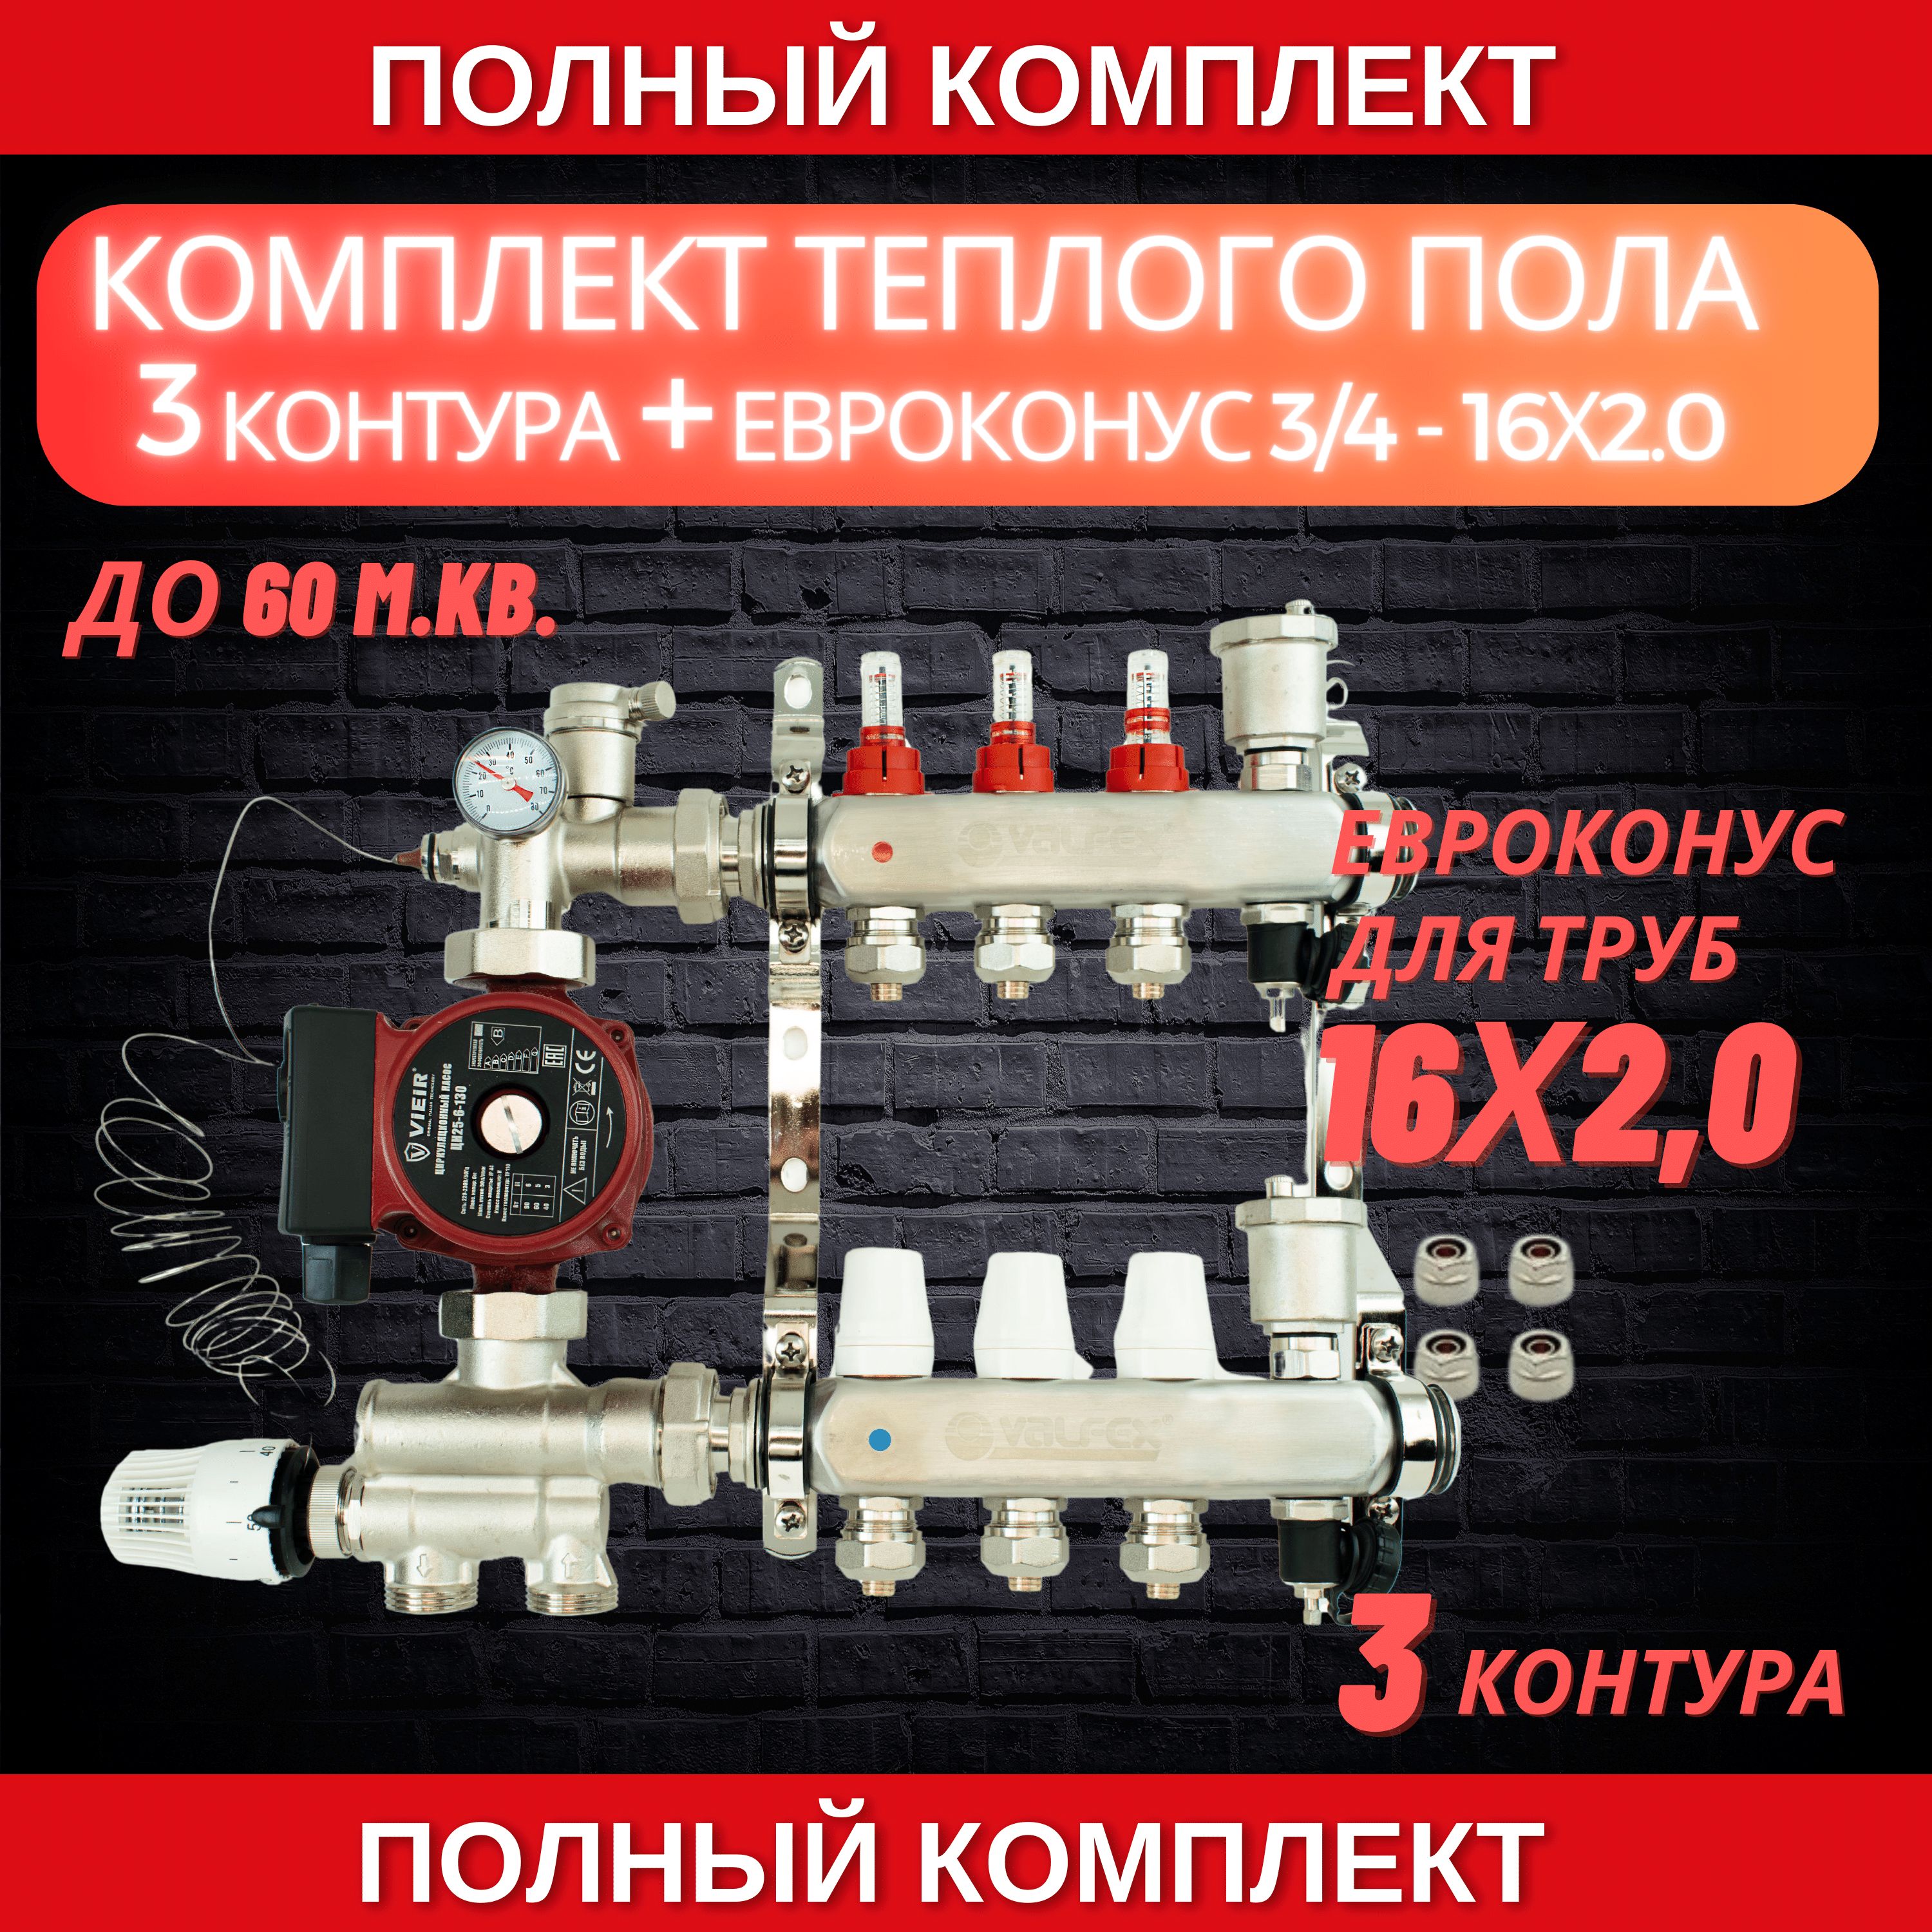 Комплектдлятеплогополана3контураVALFEX(до60м.кв)подтрубу16х2,0